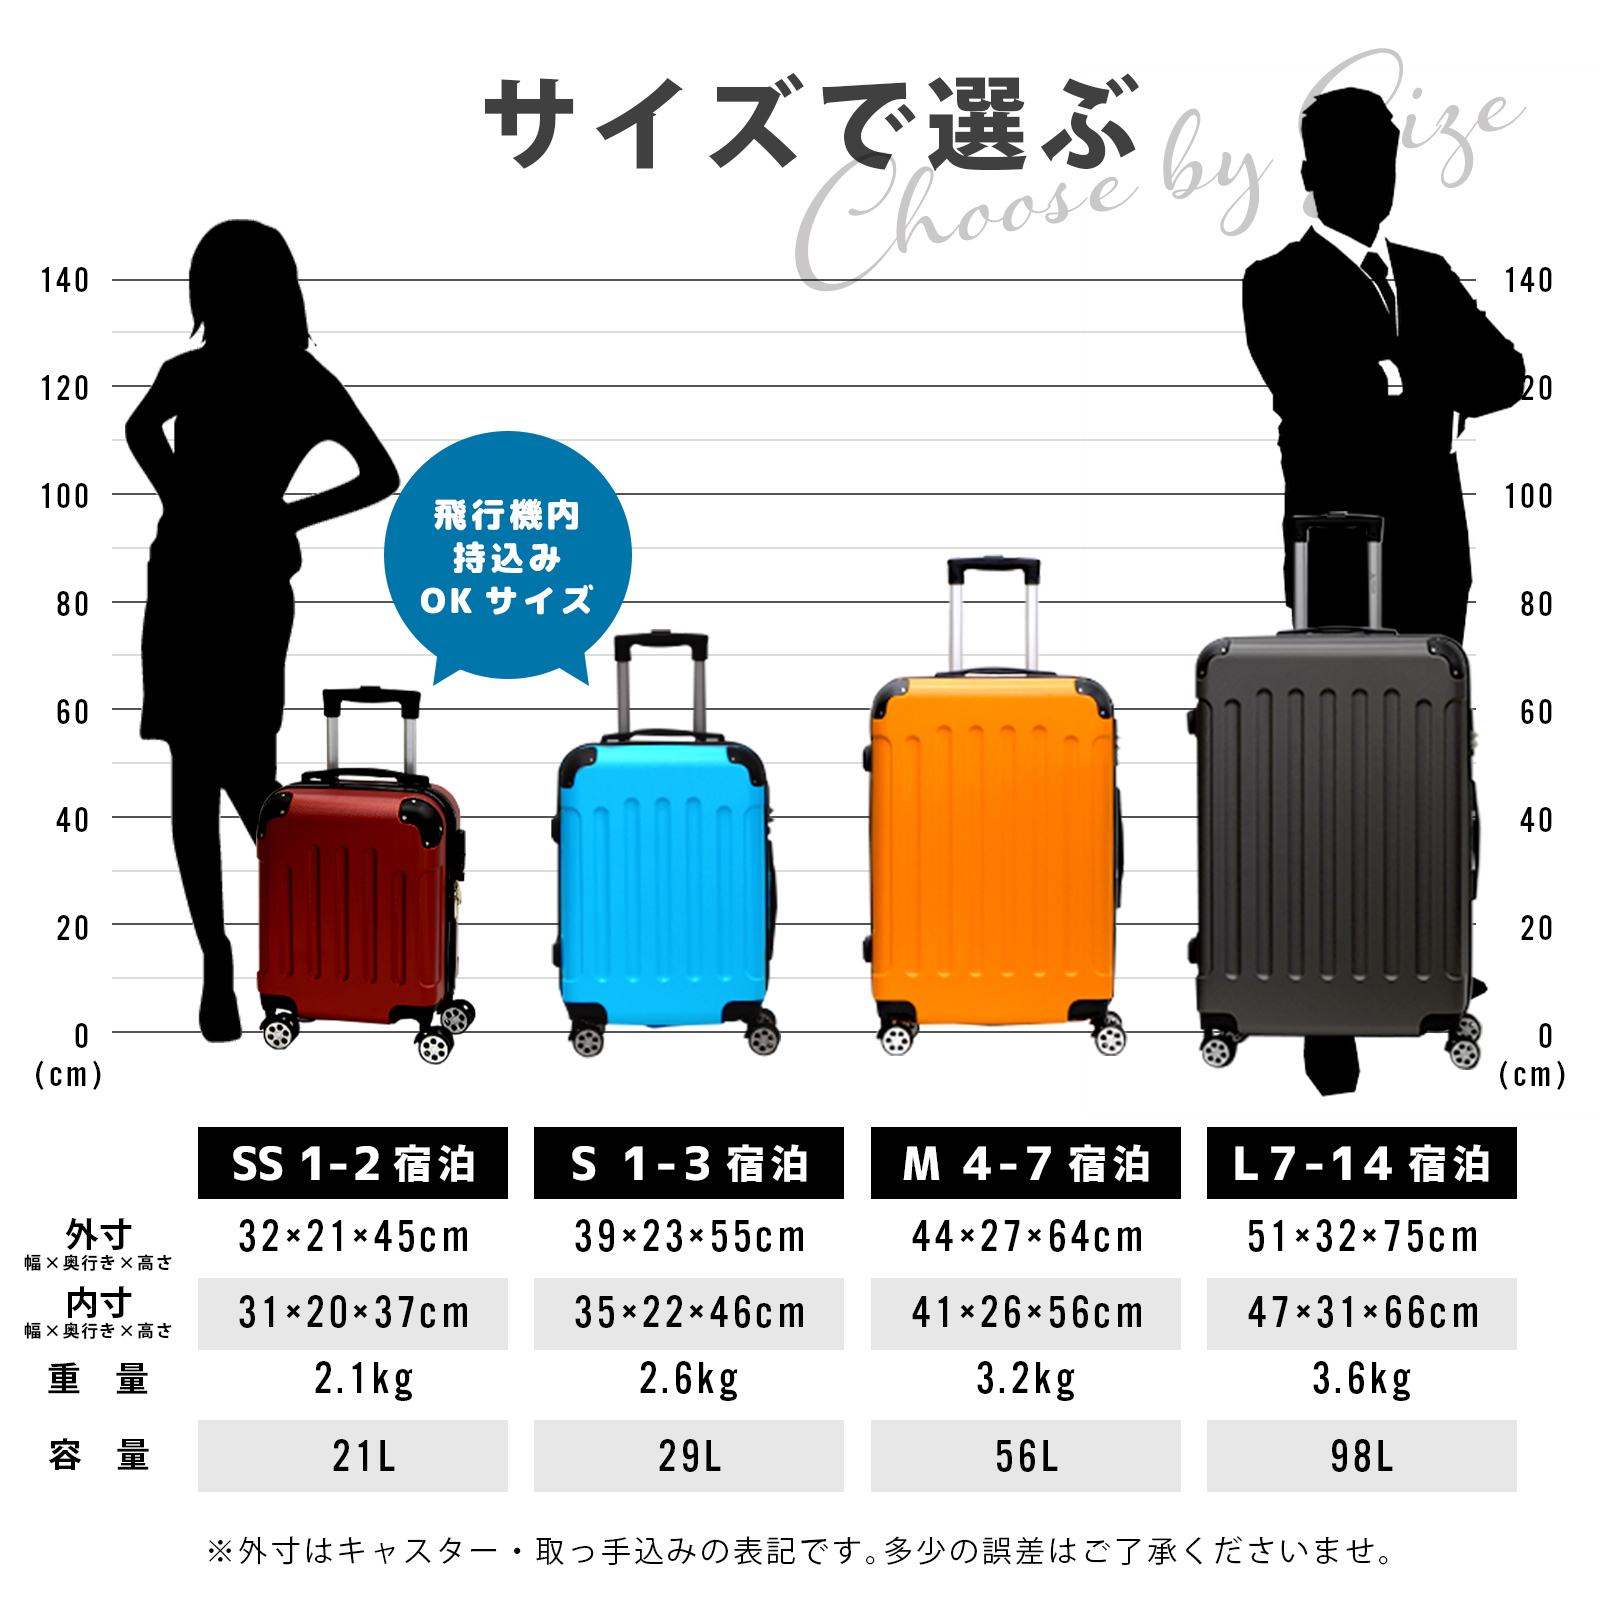 【楽天市場】スーツケース 機内持ち込み SS サイズ 容量21L【送料無料】 SS キャリーバッグ キャリーケース TSAロック エコノミック